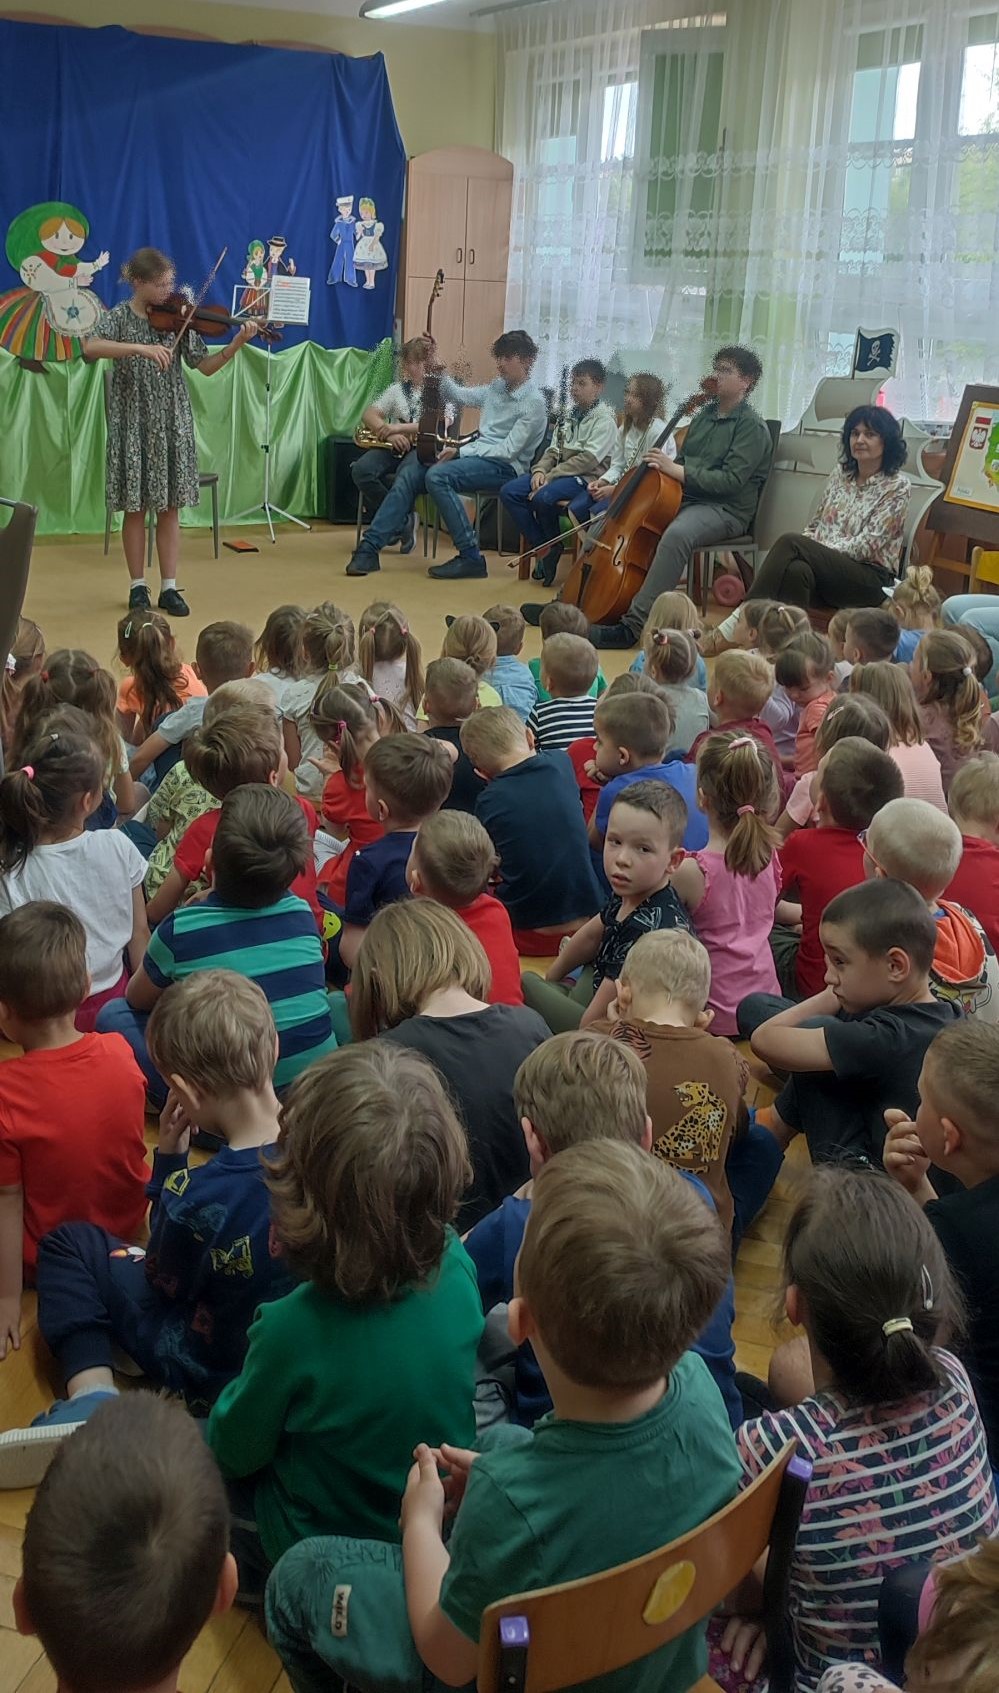 dzieci siedzą na dywanie i patrzą na dziewczynkę grającą na skrzypcach